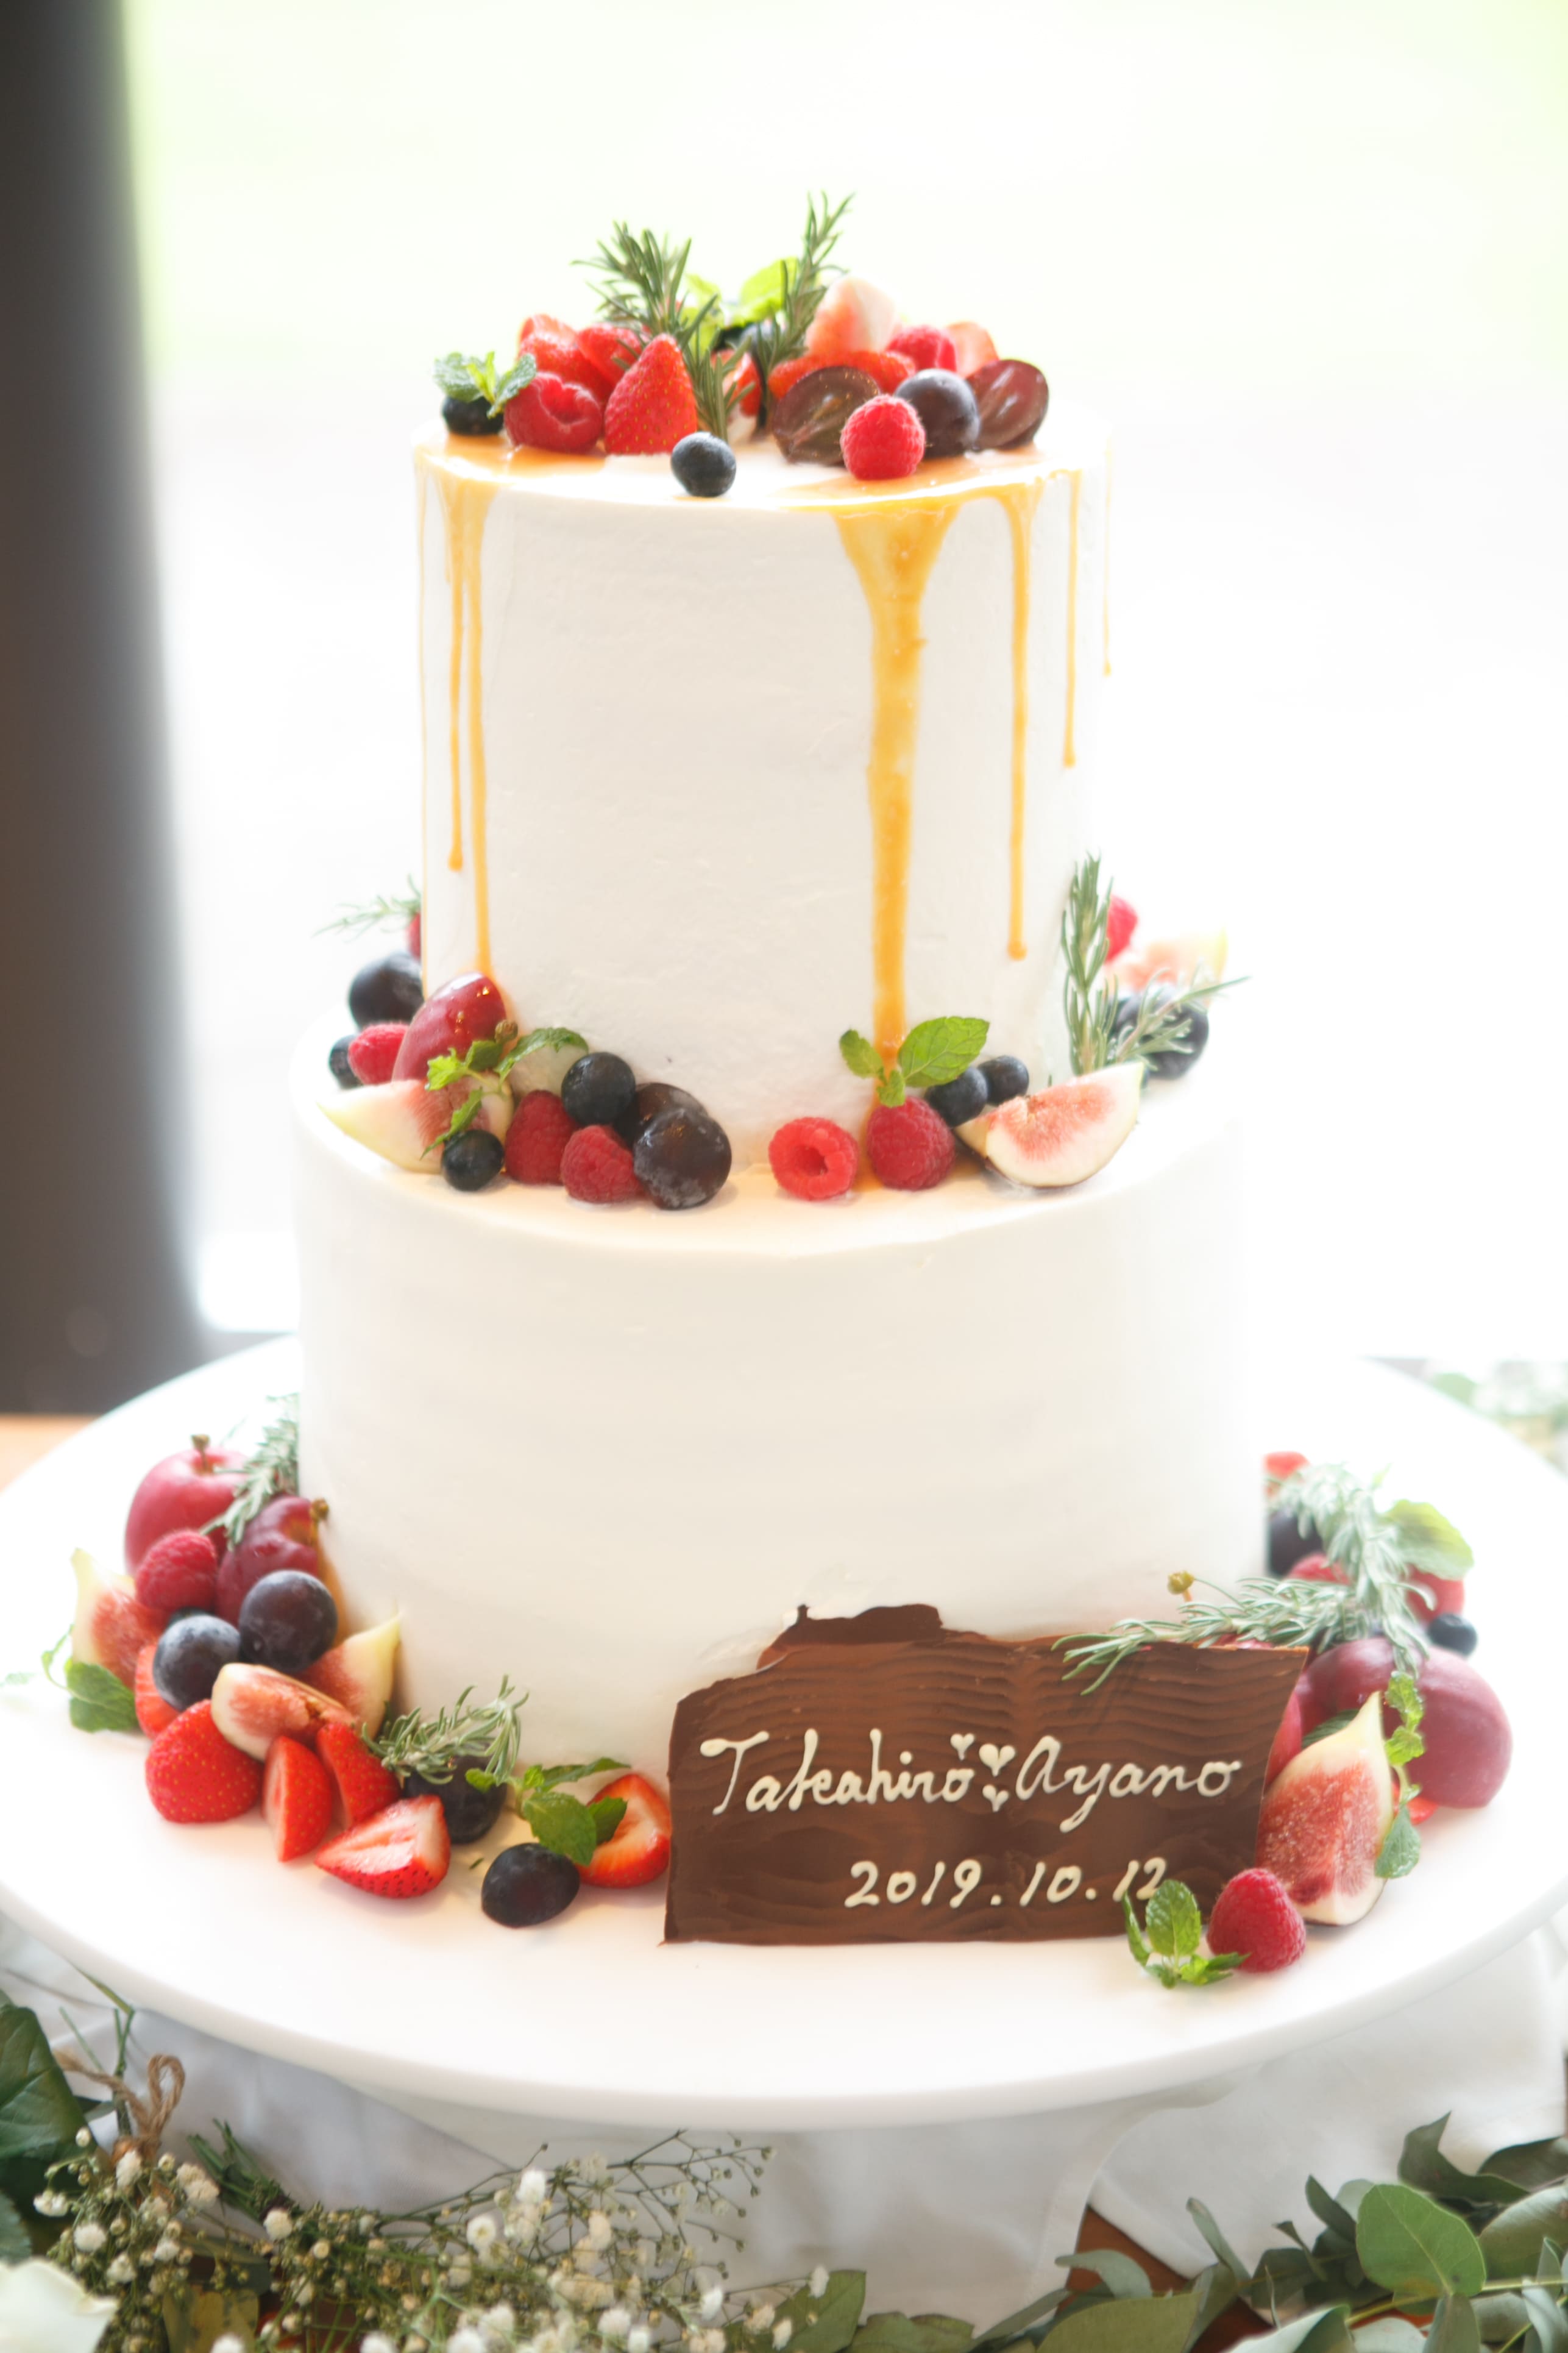 縦長の2段ケーキがオシャレ 公式 結婚式場 四日市市 アクアリュクス 三重県四日市駅